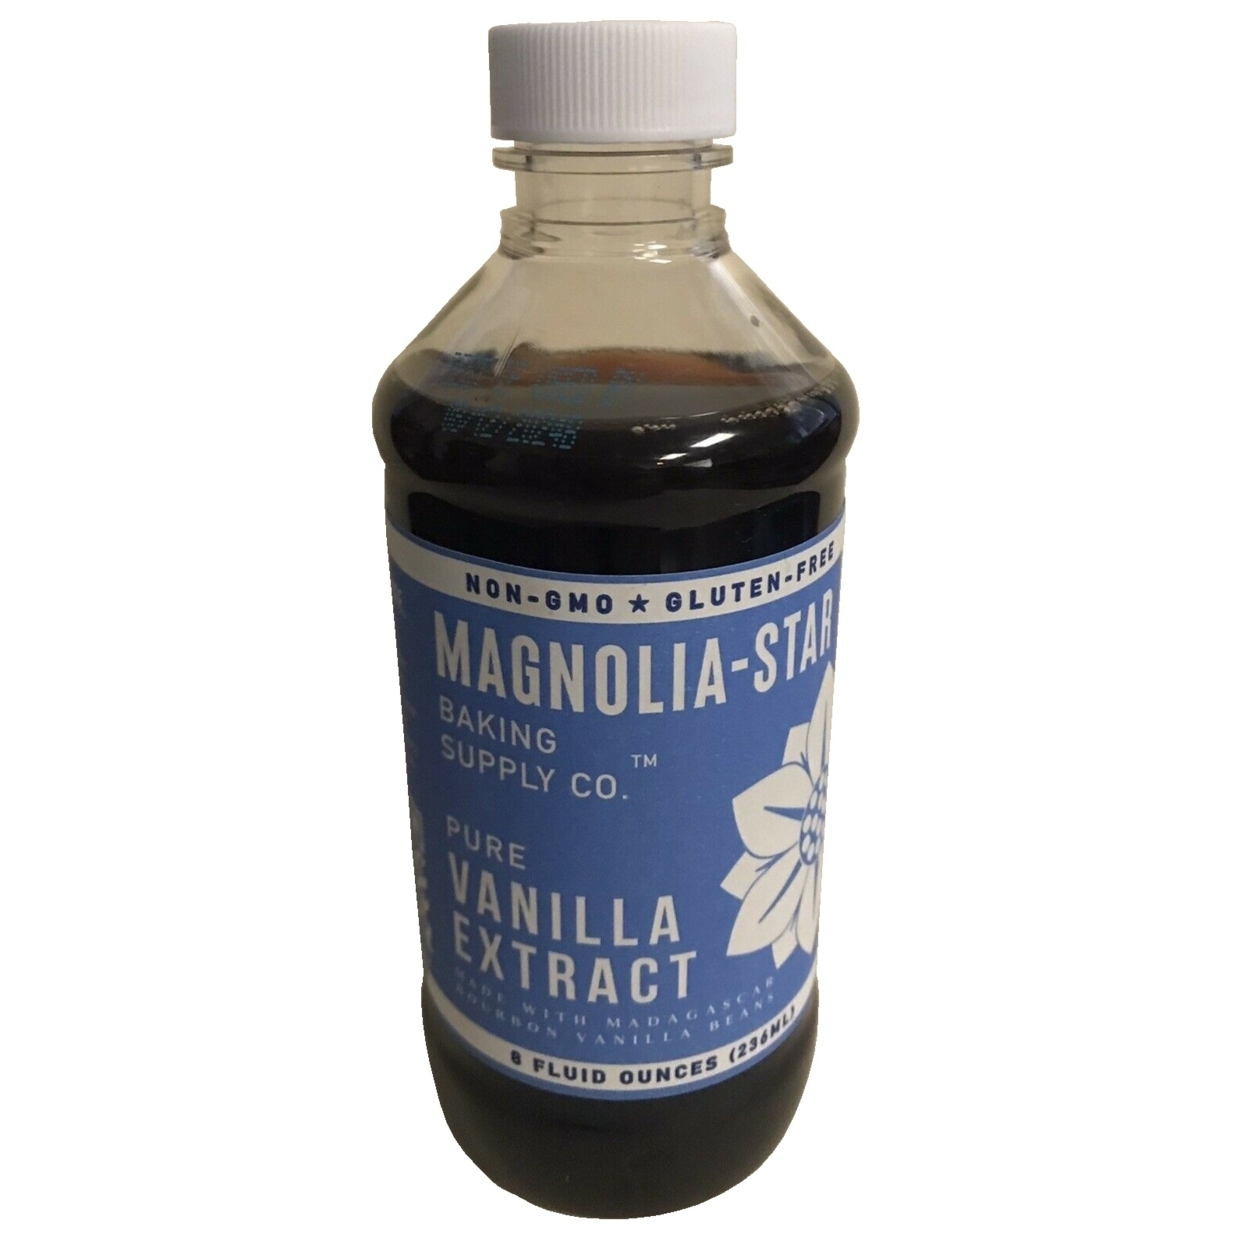 Magnolia-Star Baking Supply Company Pure Vanilla Extract, 8 Fluid Ounce